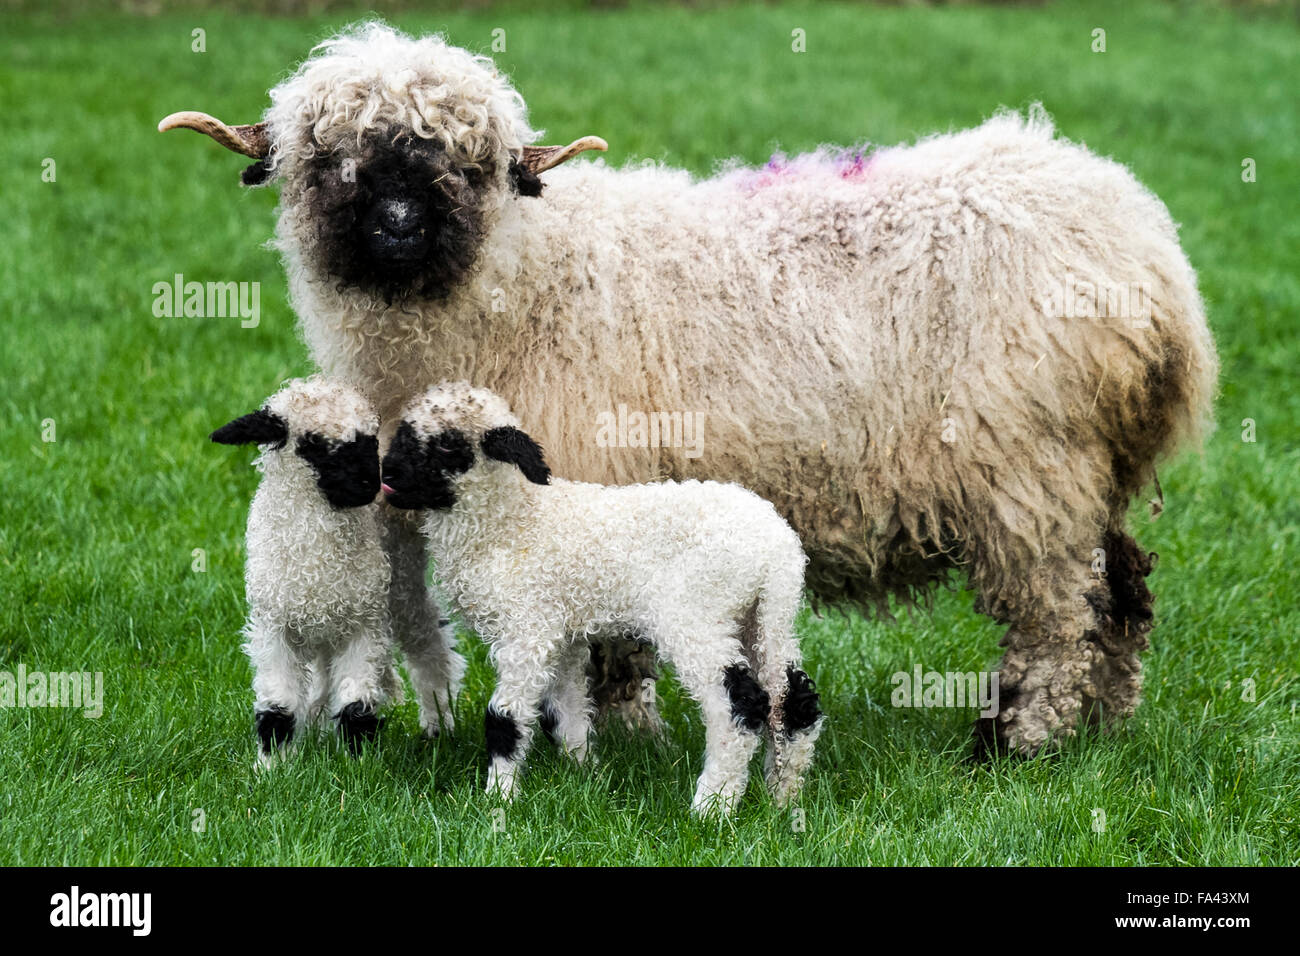 Moutons à nez noir, agneaux, brebis dans une ferme d'élevage à Burscough, dans le Lancashire. Kirsty Slinger a dit qu'elle avait eu une surprise juste avant Noël quand un des brebis noires valaisannes a donné naissance de manière inattendue à Windmill Animal Farm. « un matin, je suis allé les vérifier et cette chose était sur le terrain. Nous avons donc le premier agneau valais à naître dans le Lanchashire, a-t-elle ajouté. La ferme est spécialisée dans l'élevage de races rares, donc la naissance est une grande nouvelle pour les visiteurs de la ferme pendant les vacances de Noël. Banque D'Images